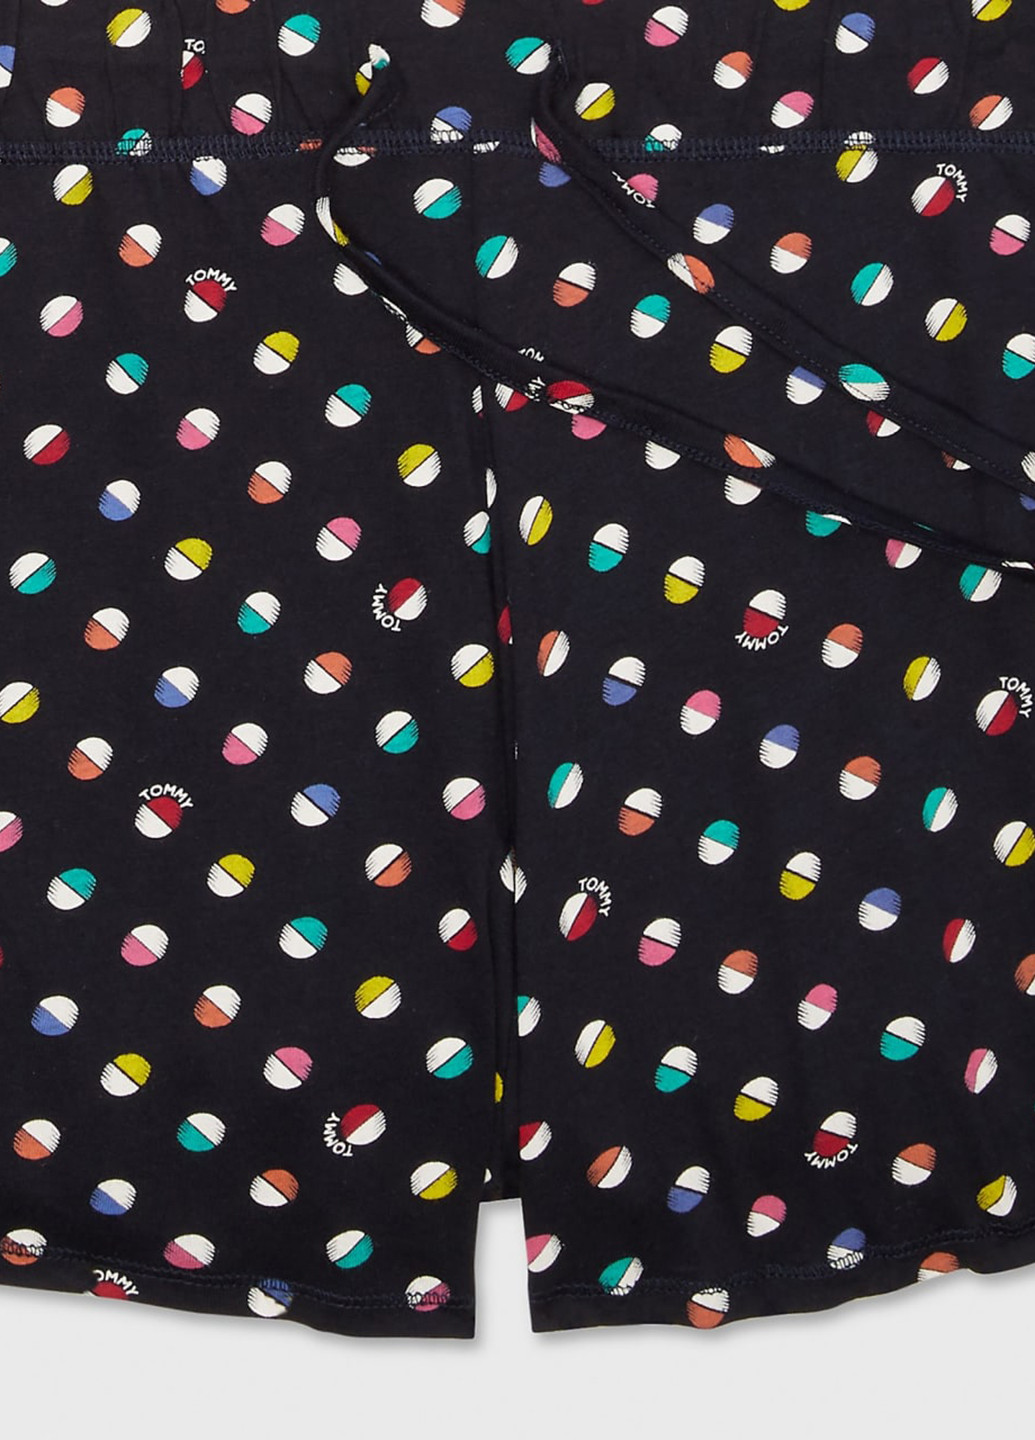 Комбинированная всесезон пижама (майка, шорты) майка + шорты Tommy Hilfiger